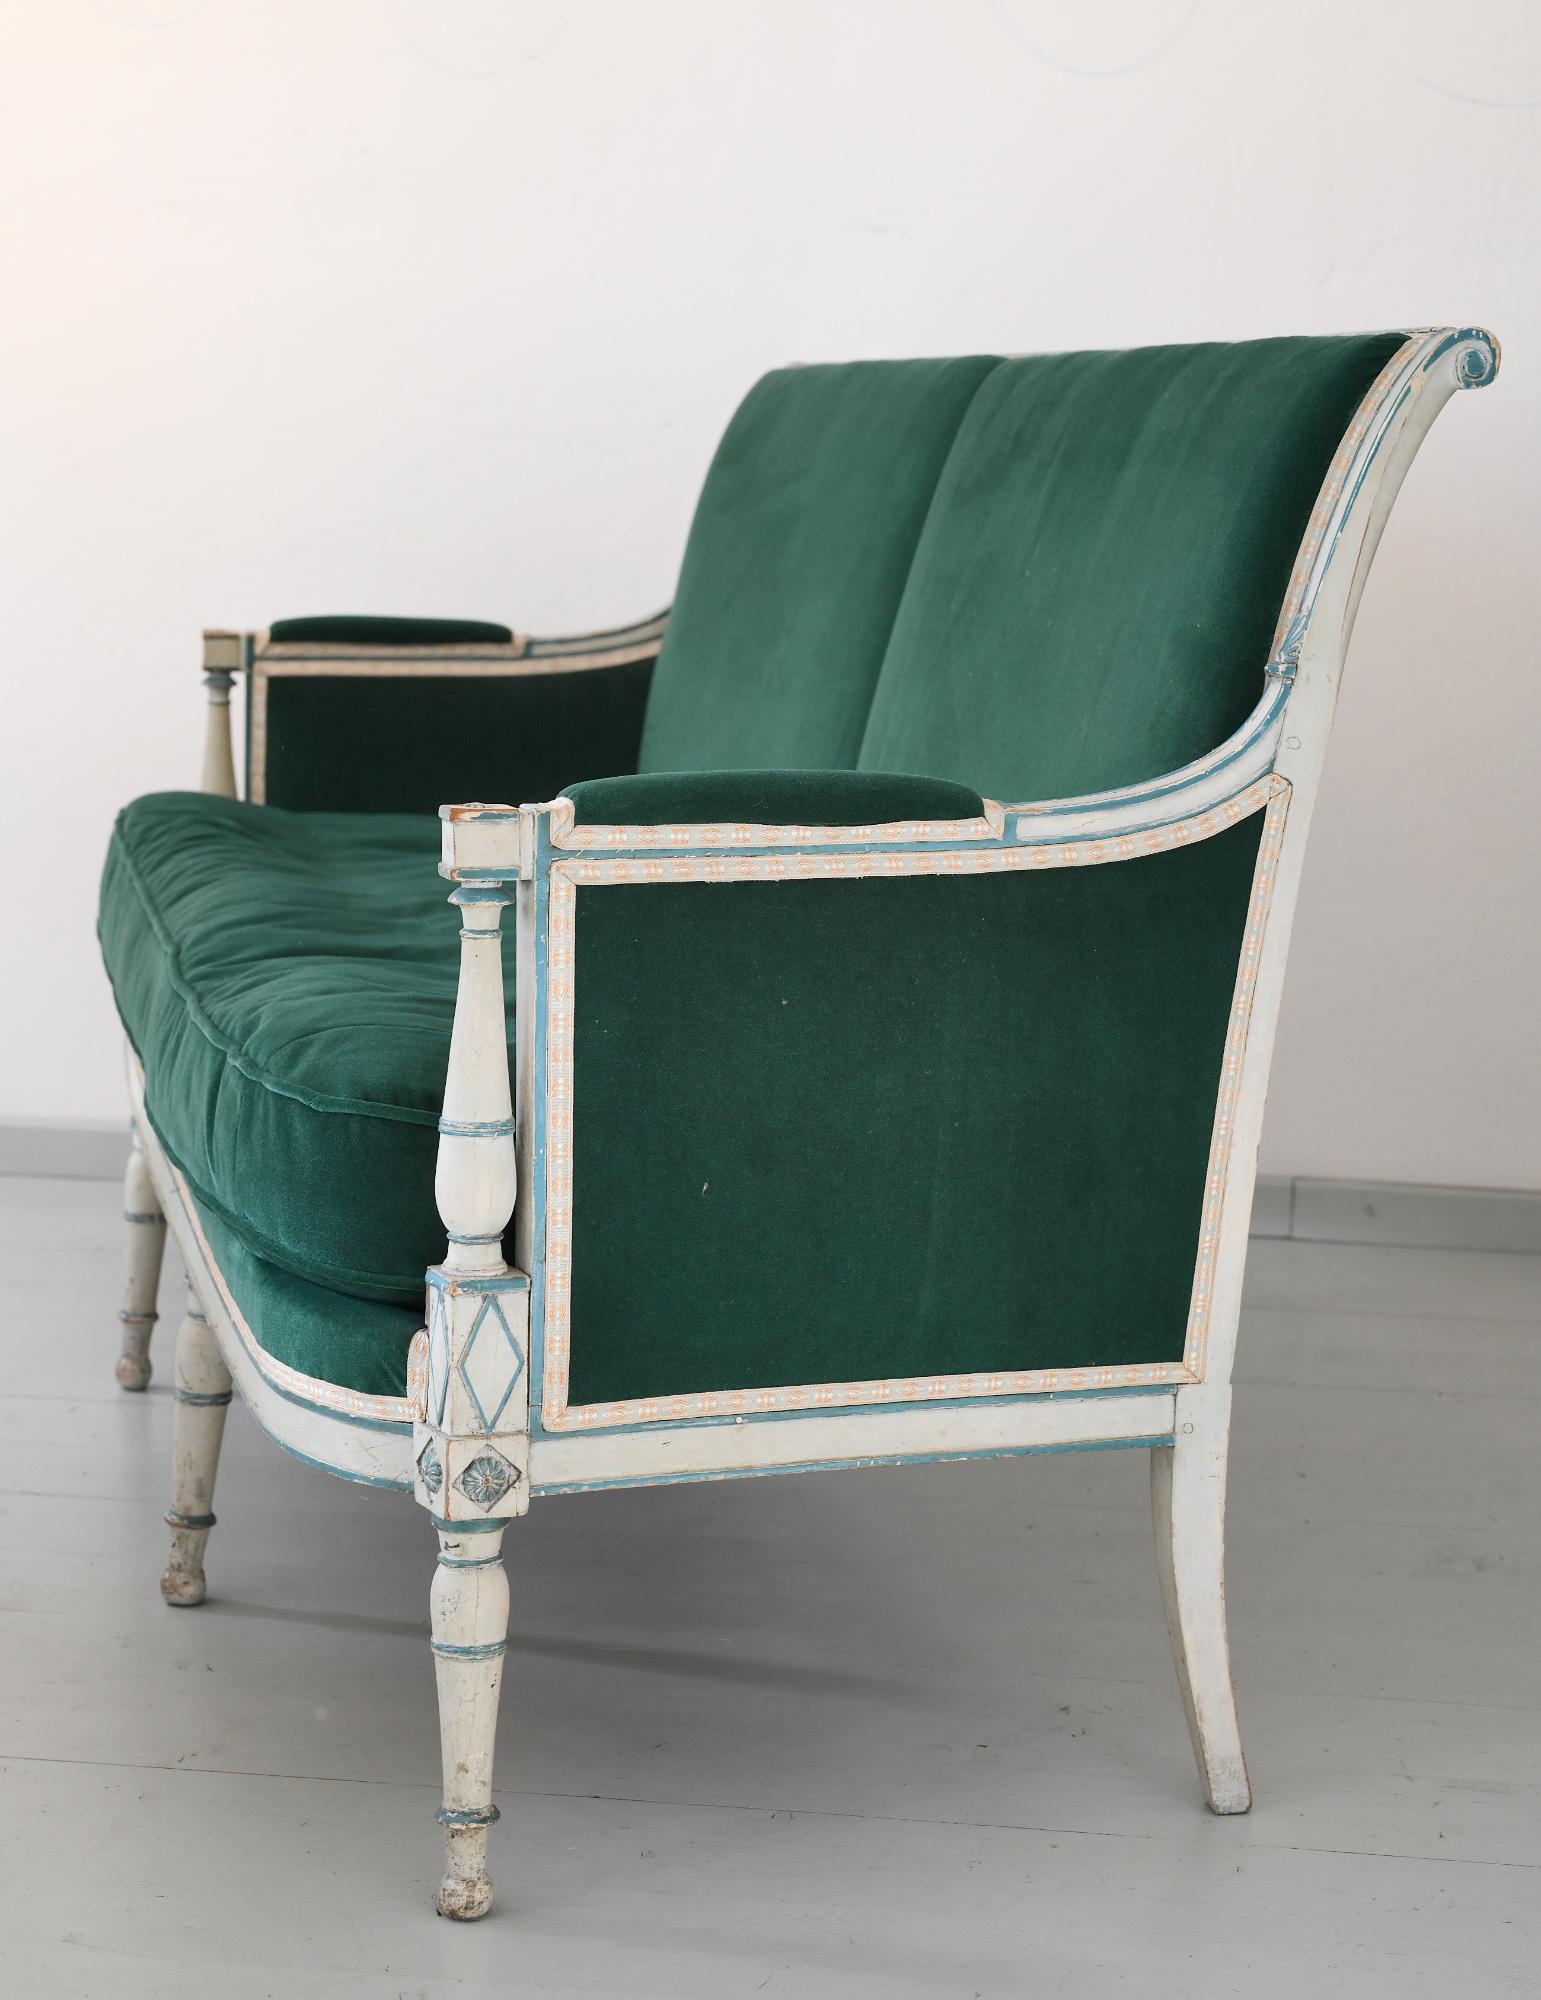 Französisches Sofa oder Canape Directoire mit elegant geformtem Rahmen. Es ist grau und grün lackiert und die ursprüngliche Oberfläche ist wunderschön geschnitzt. Das Sofa ist neu gepolstert mit einem bequemen Mohairstoff und die Kissen sind mit